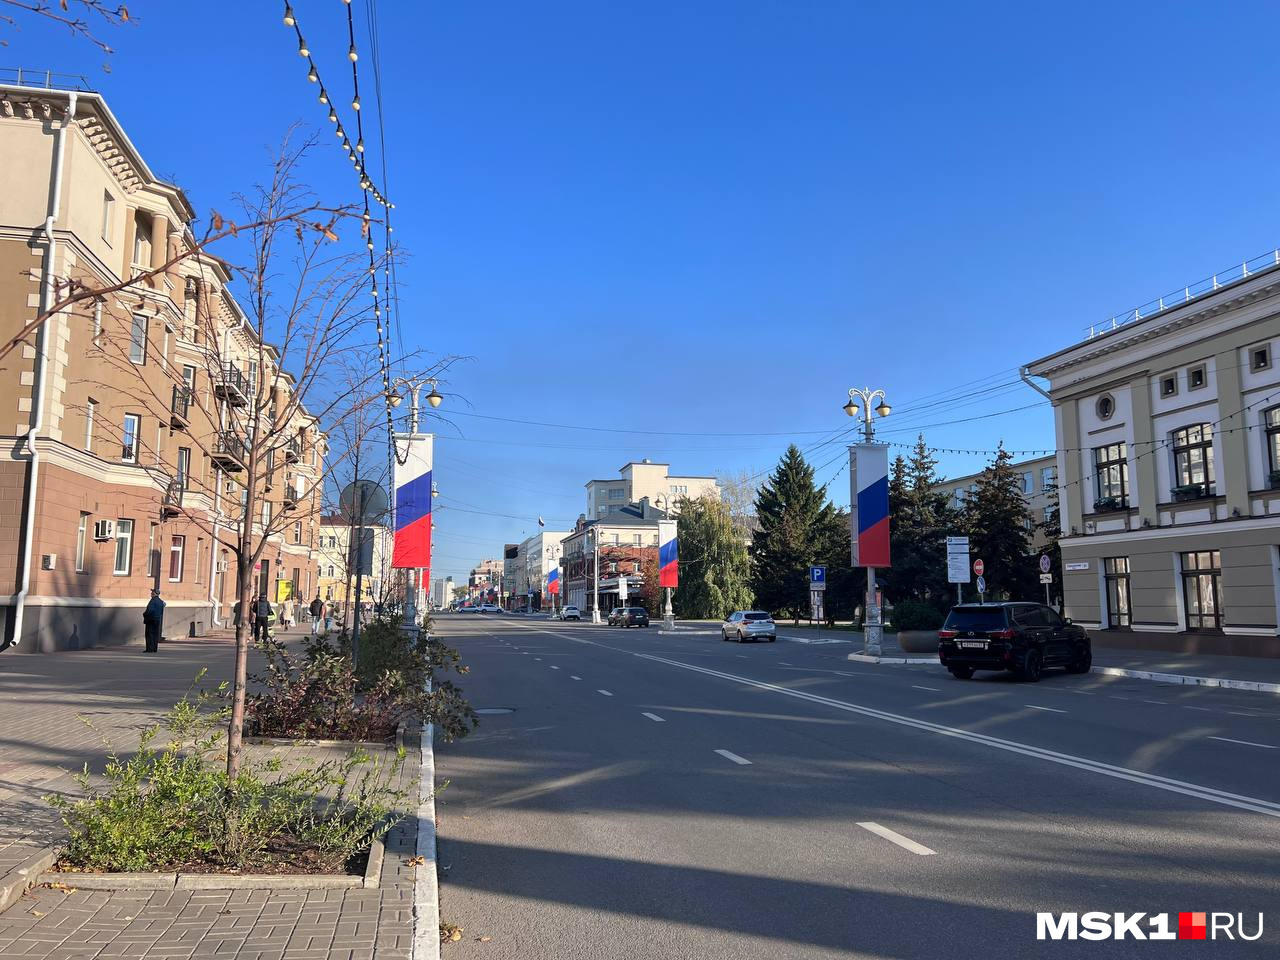 Жители Белгорода поражают своим спокойствием — неторопливая, размеренная жизнь в городе идет своим чередом даже во время обстрелов